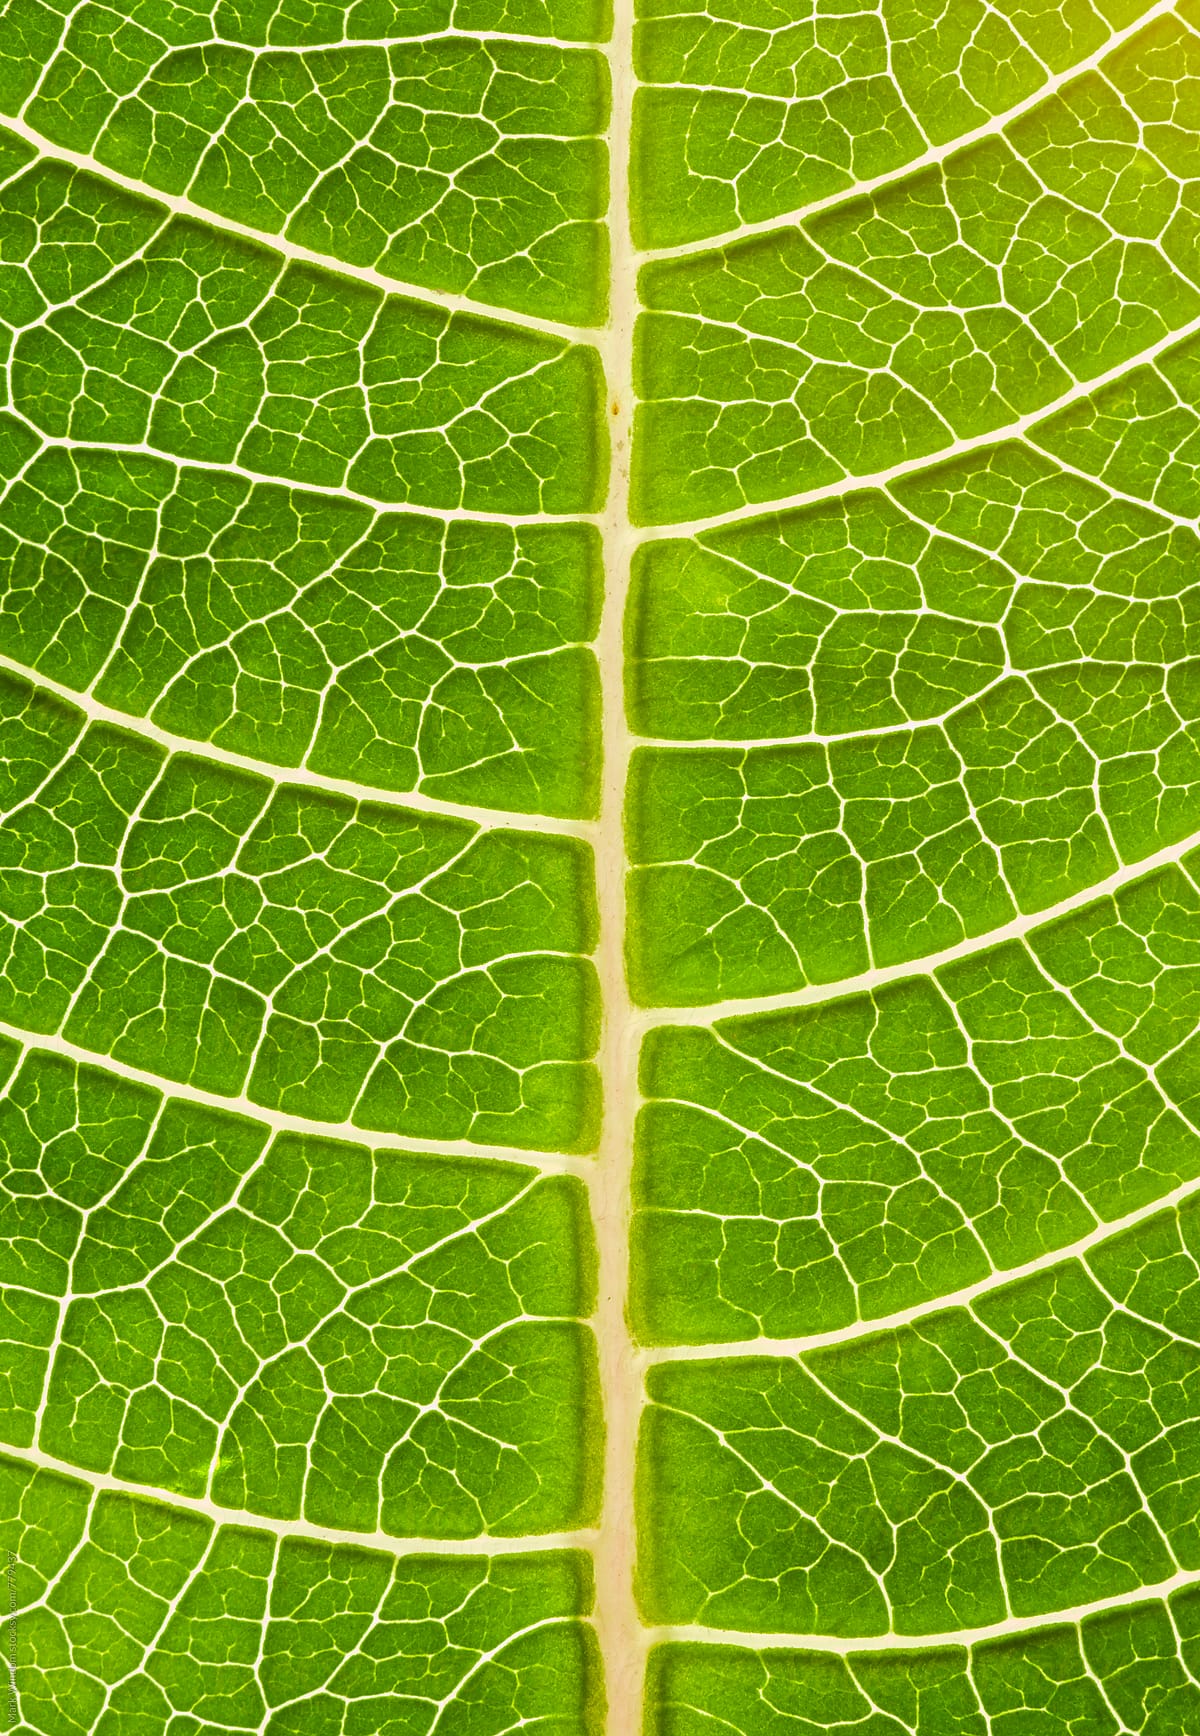 Poinsettia leaf detail, closeup